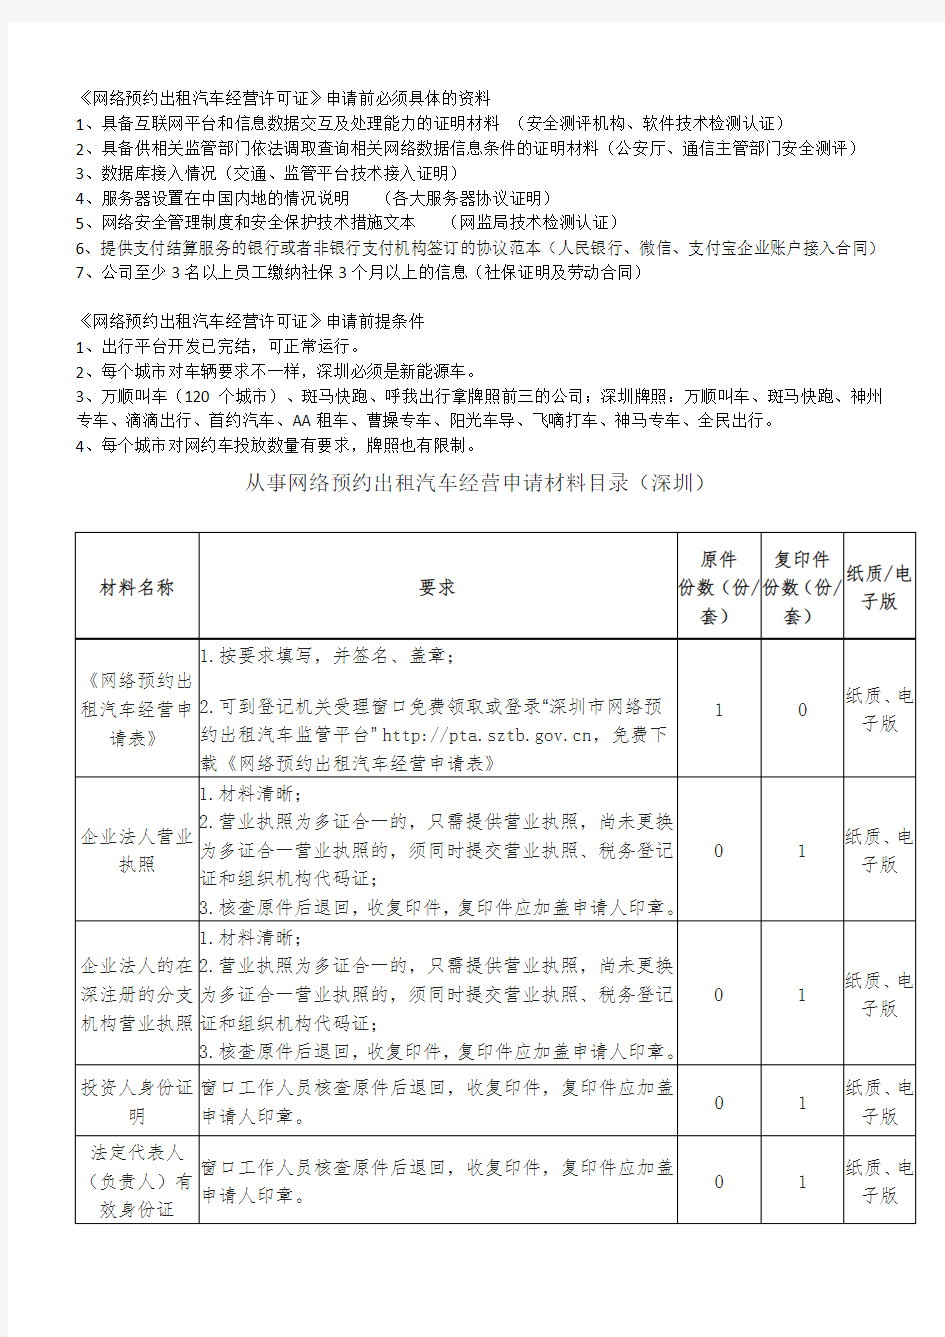 《深圳市网络预约出租汽车经营许可证》申办条件